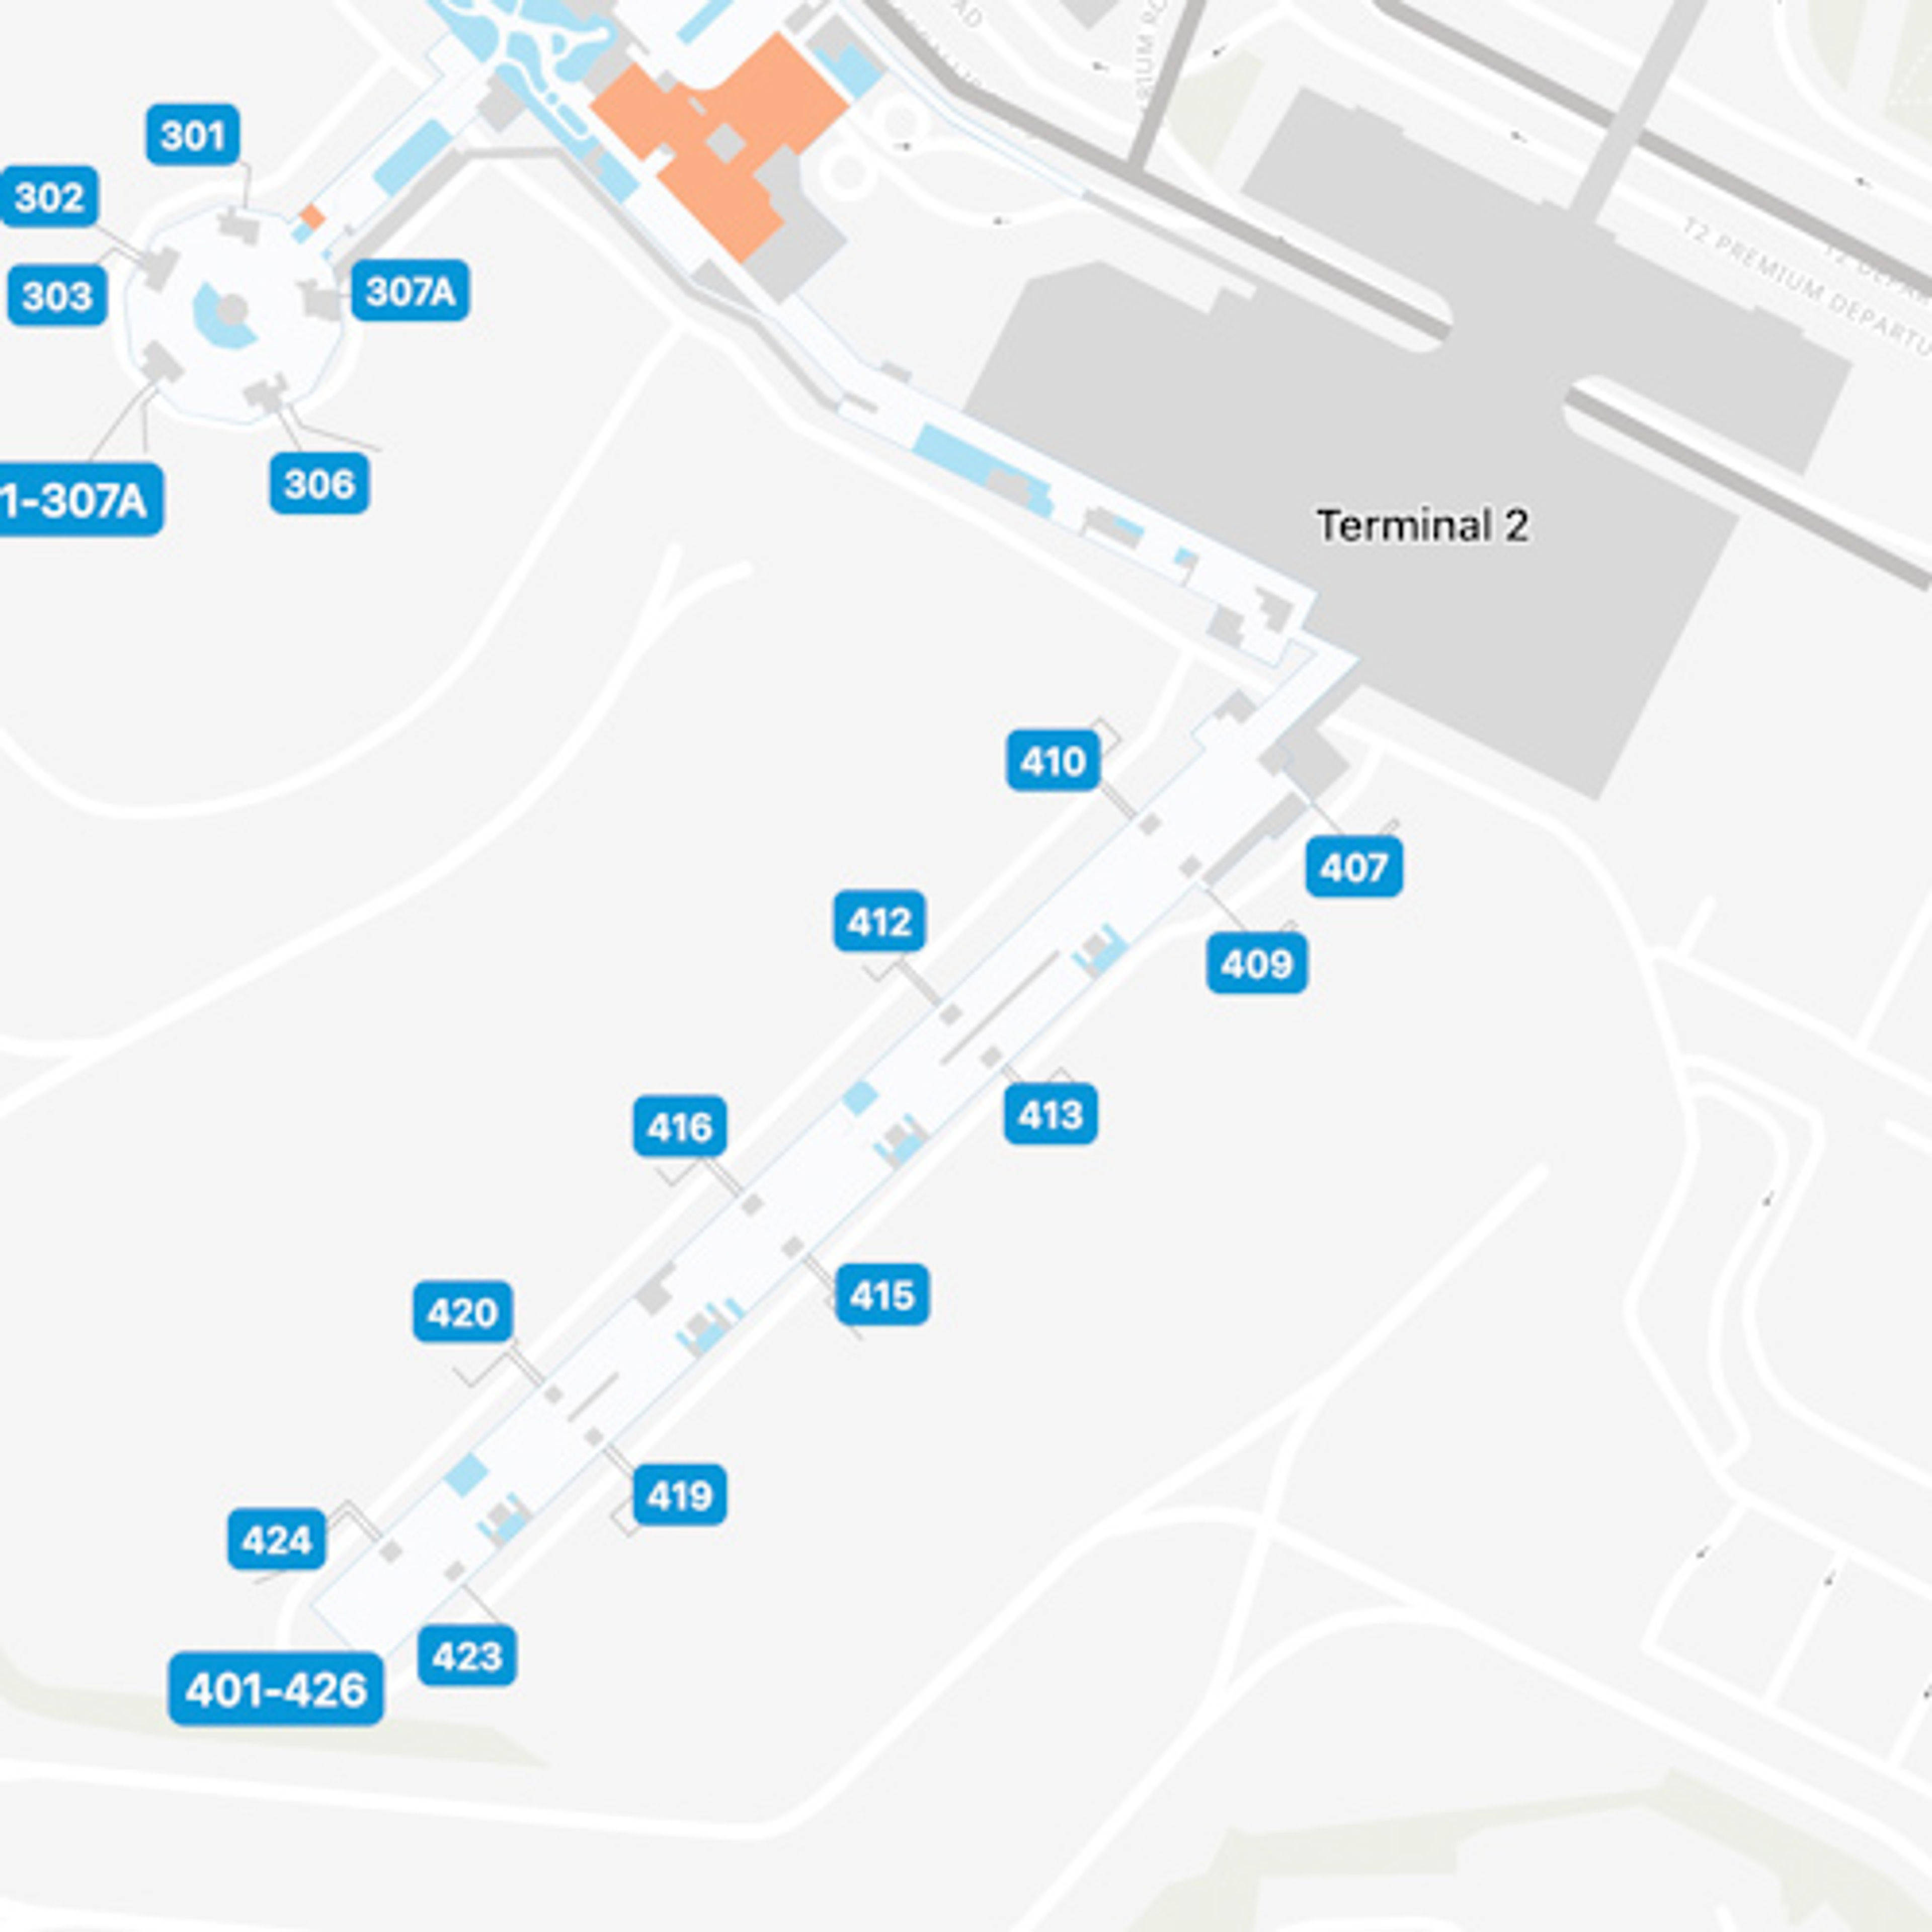 Dublin Airport DUB Terminal 2 Map